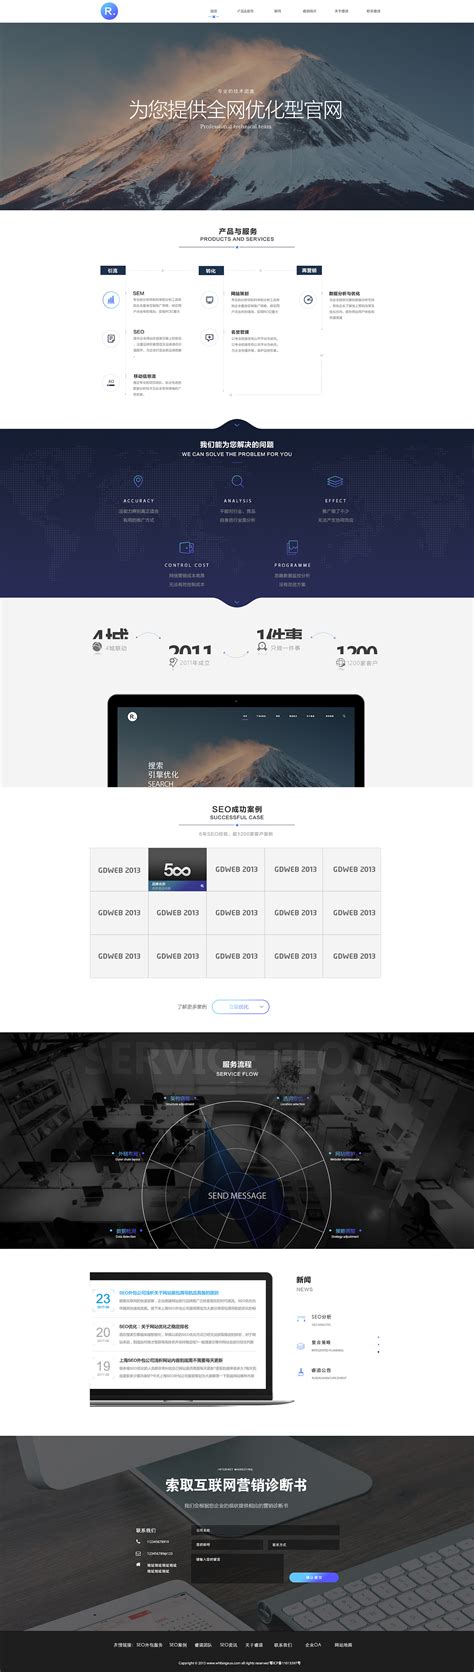 网站制作-北京企业商城网站开发设计制作公司-中联科技